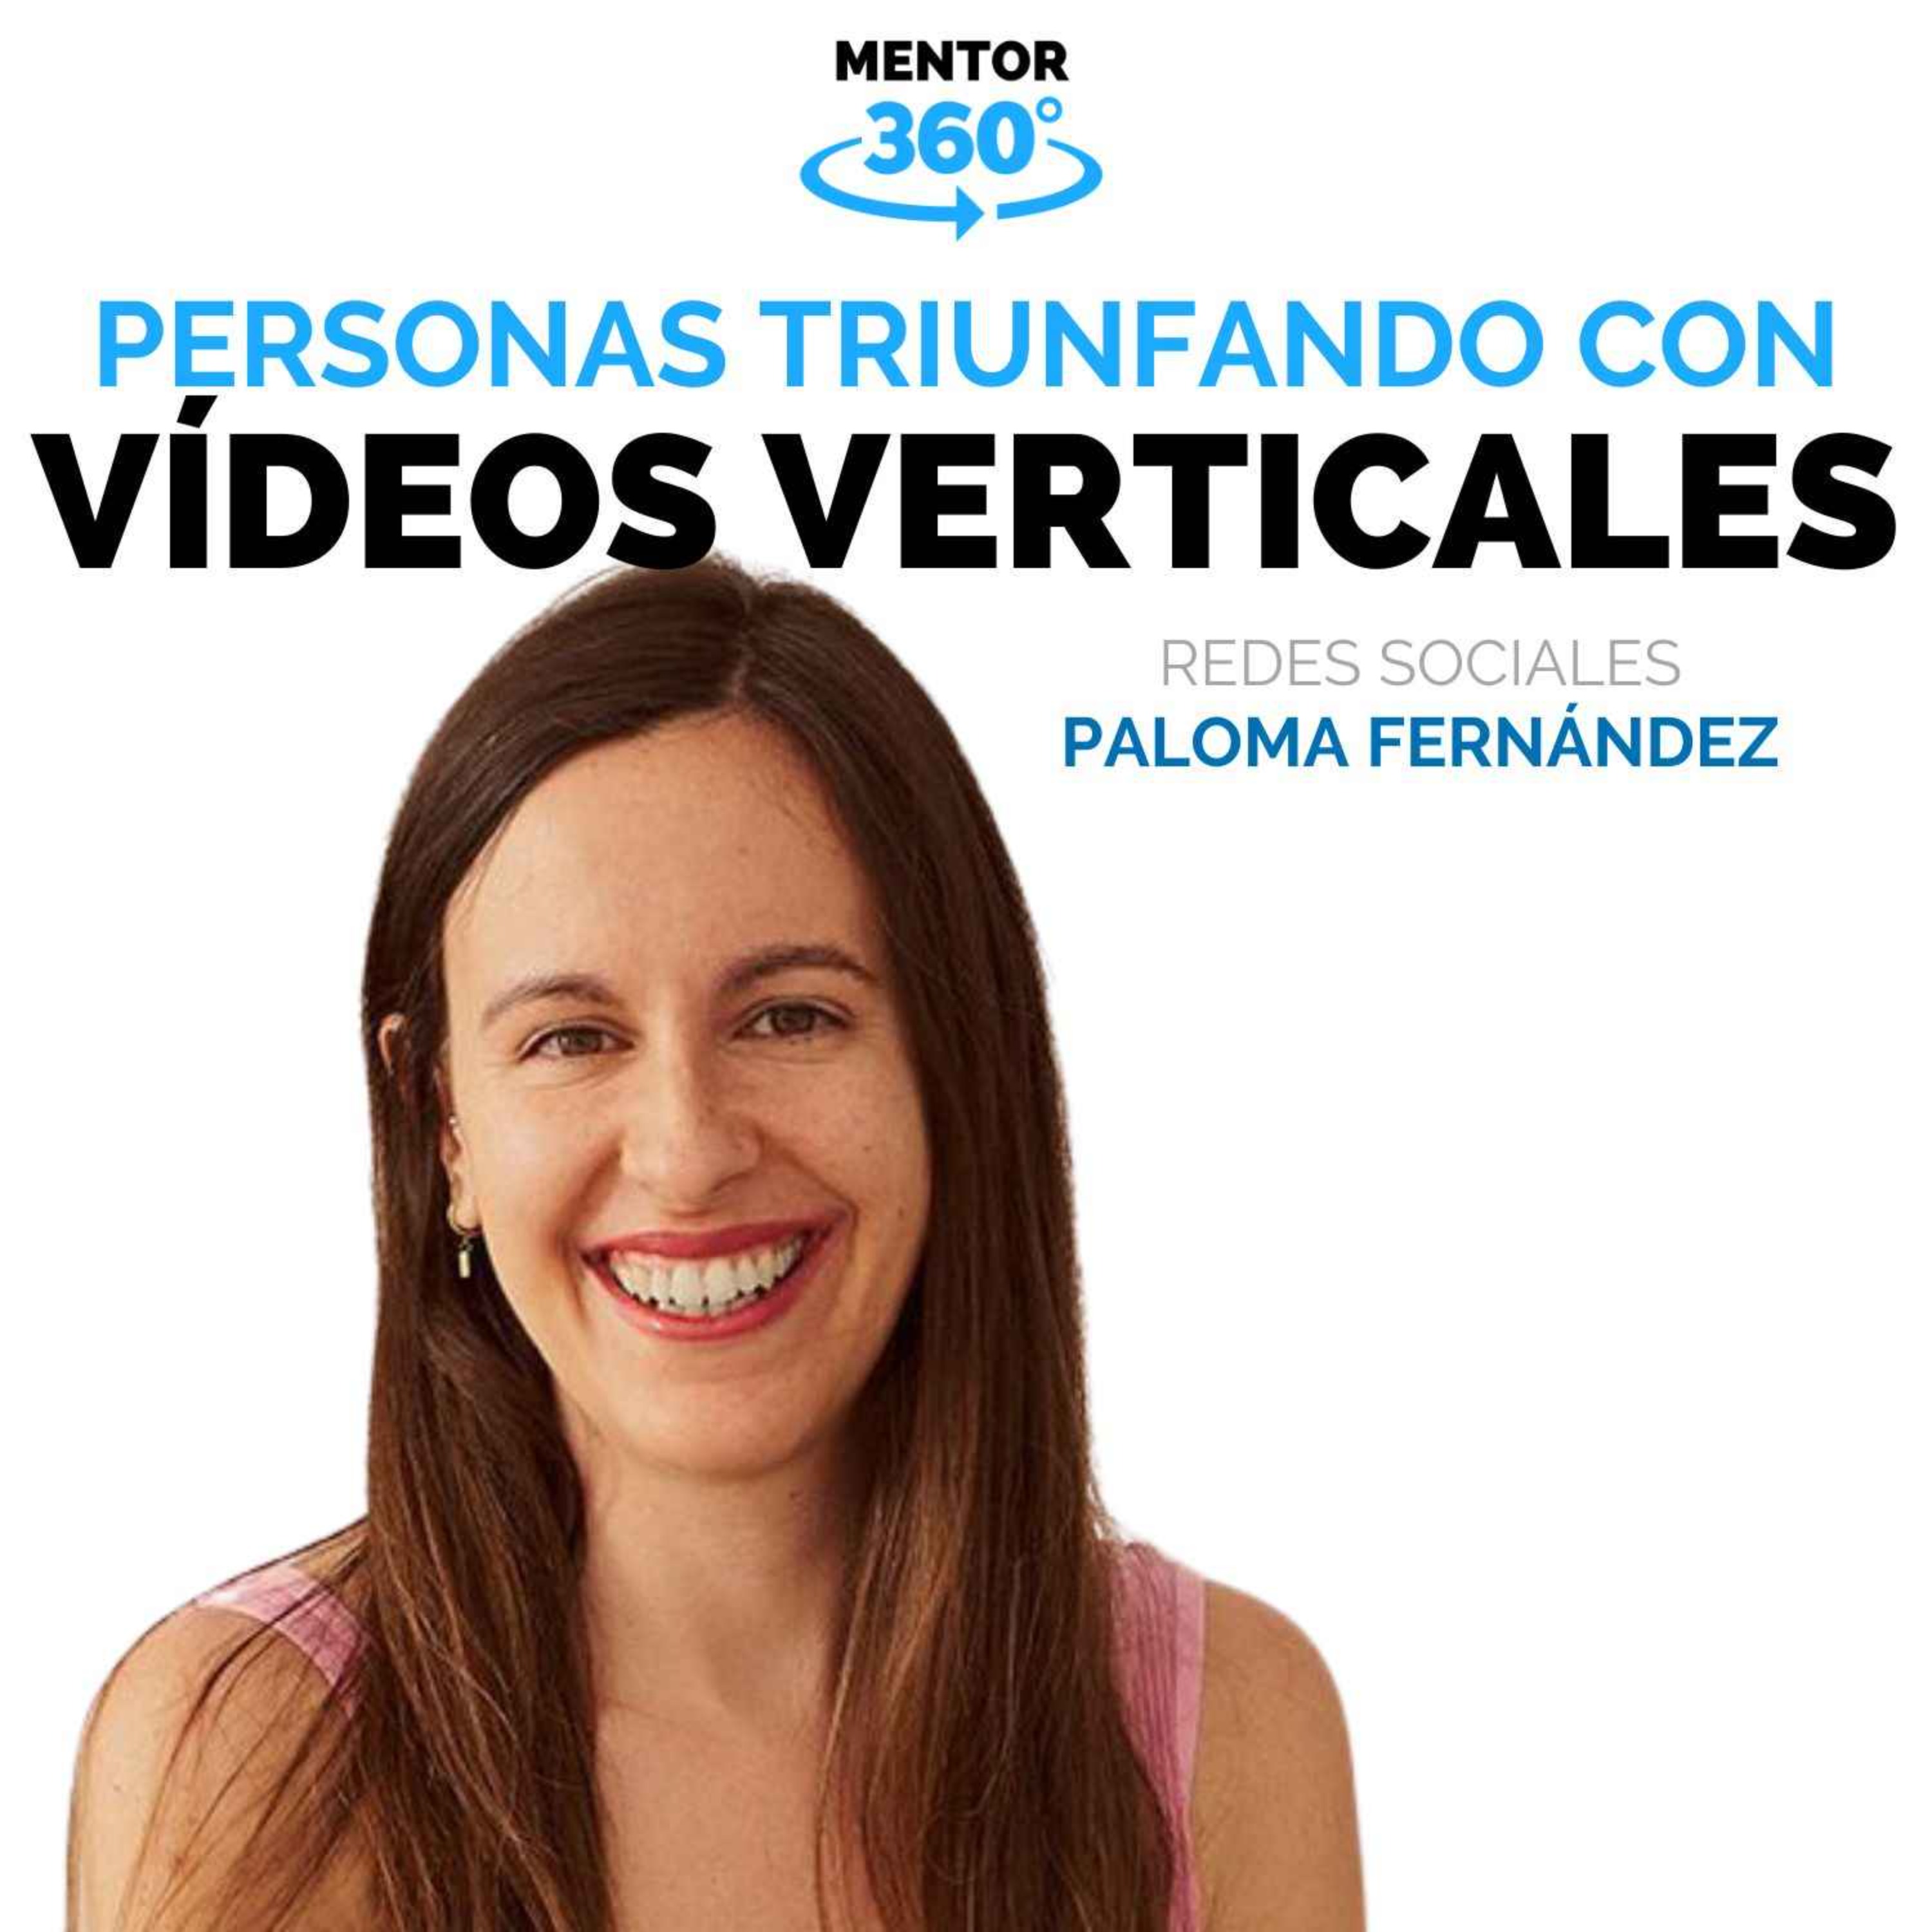 Personas Triunfando con Vídeos verticales - Paloma Fernández - Redes Sociales - MENTOR360